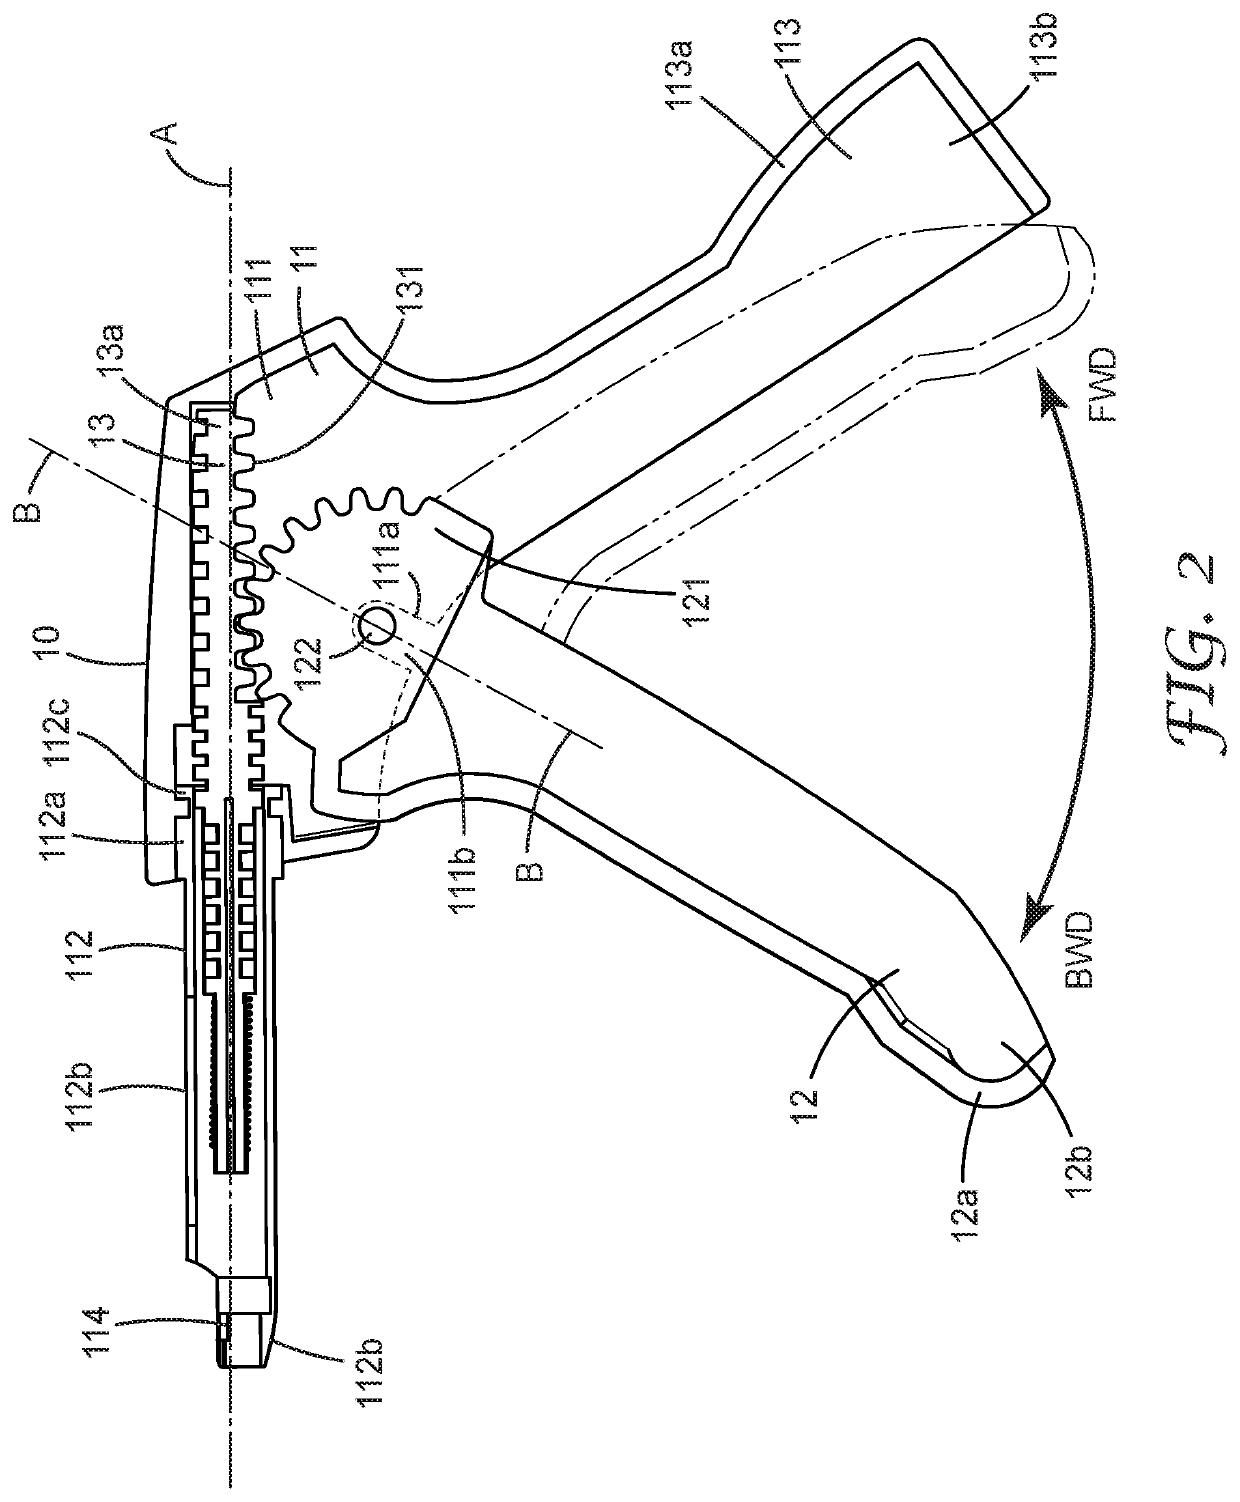 A Dispensing Gun For Dispensing A Dental Material